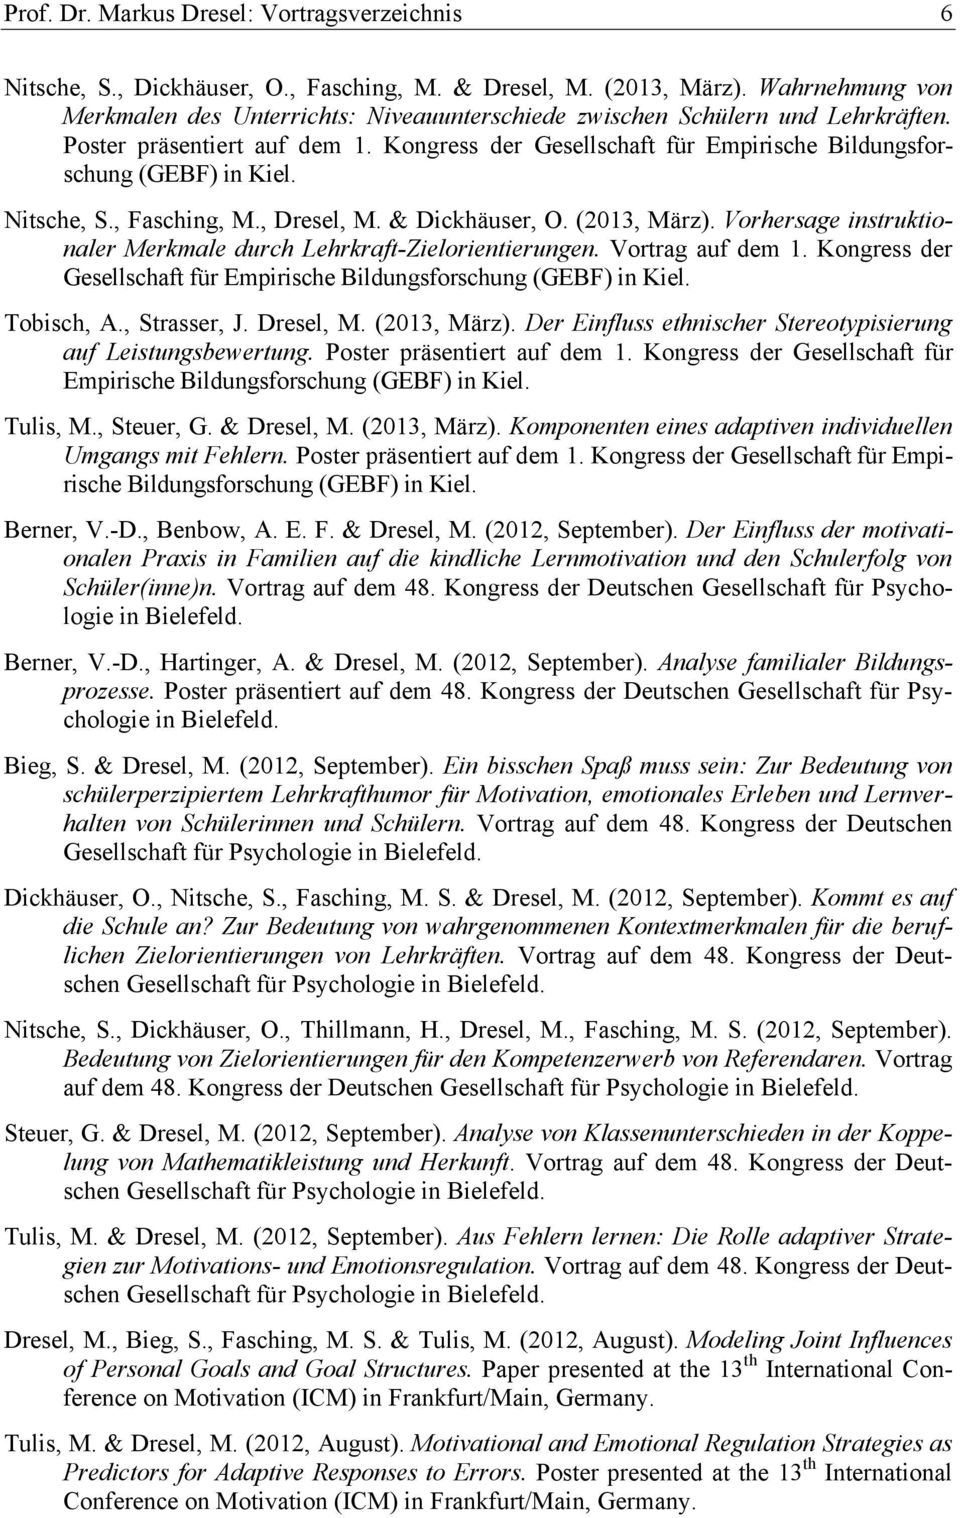 Kongress der Gesellschaft für Empirische Bildungsforschung (GEBF) in Kiel. Nitsche, S., Fasching, M., Dresel, M. & Dickhäuser, O. (2013, März).